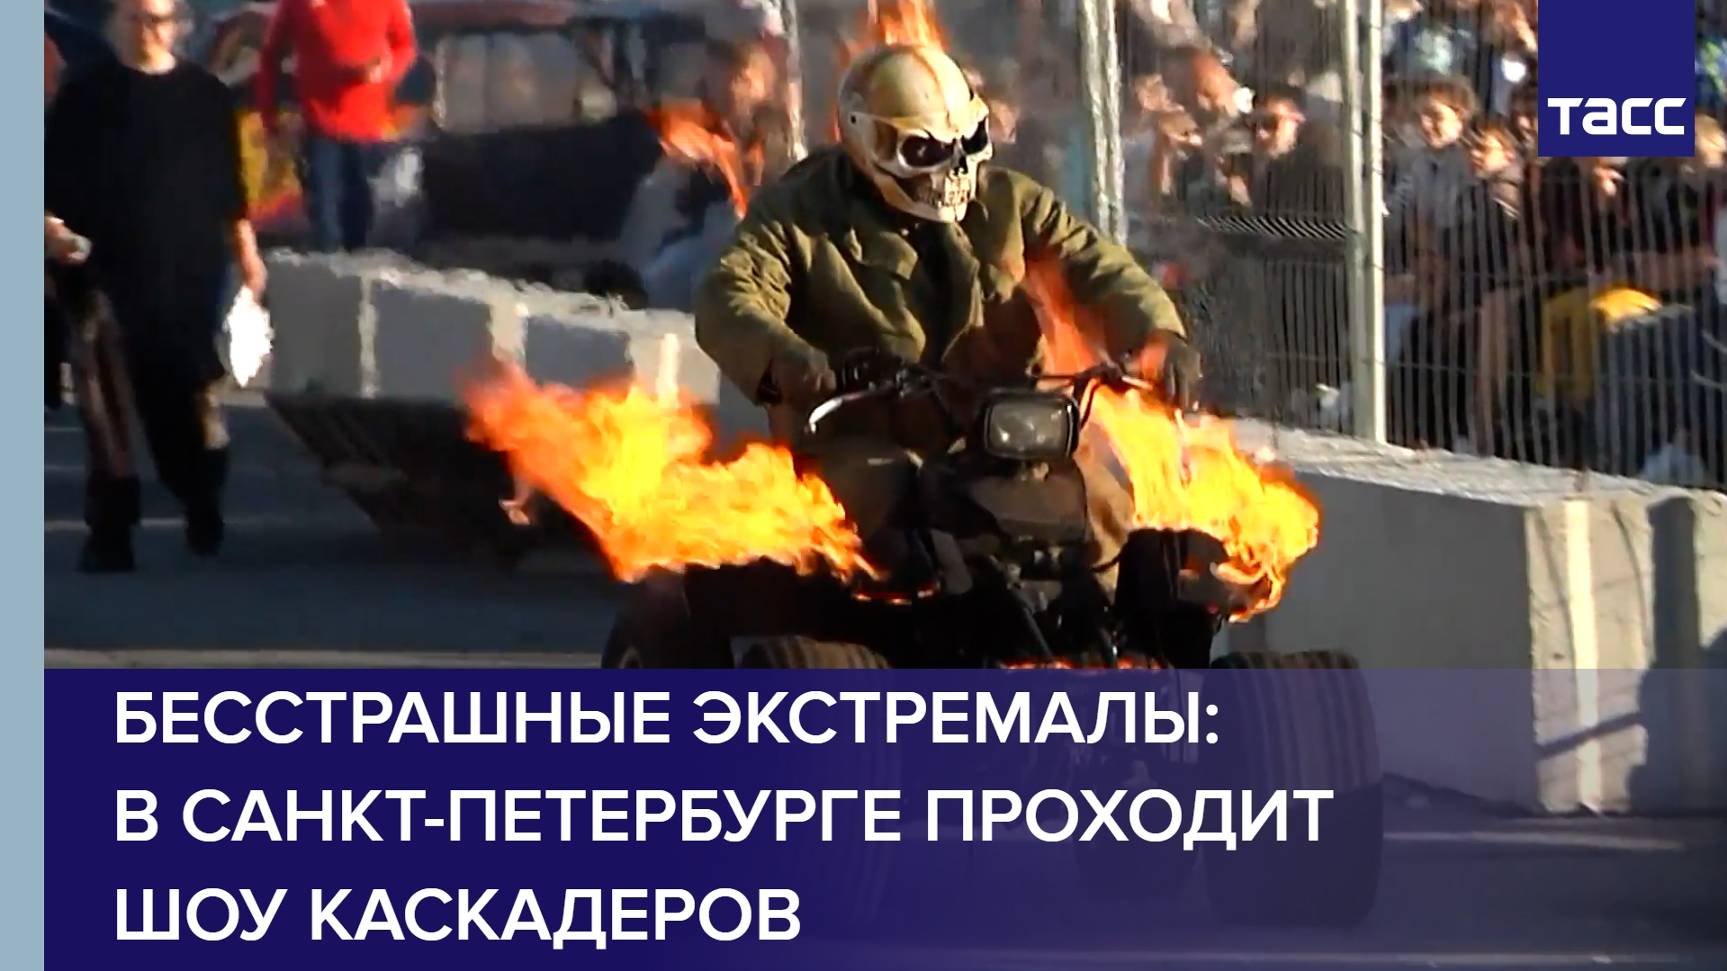 Бесстрашные экстремалы: в Санкт-Петербурге проходит шоу каскадеров